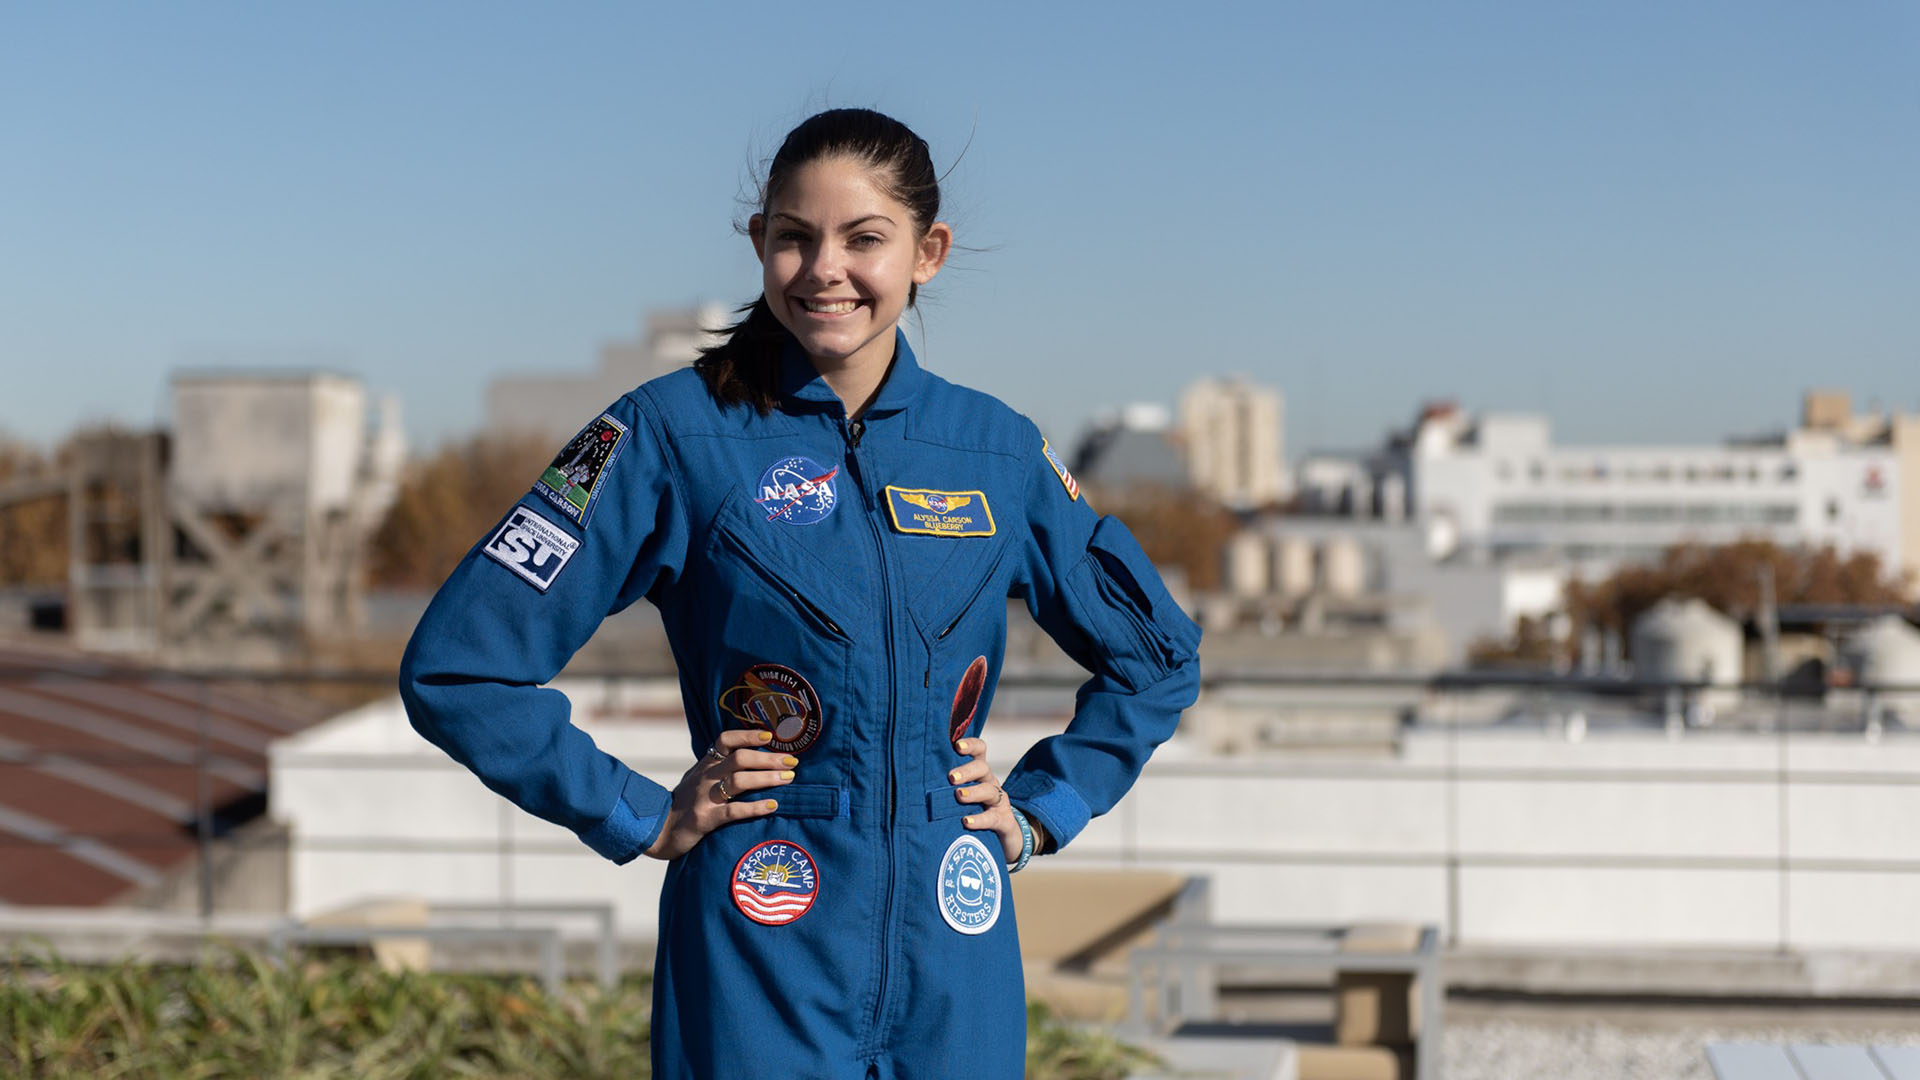 Conoce a Alyssa Carson, la astronauta más joven de la NASA  que vivirá en Marte